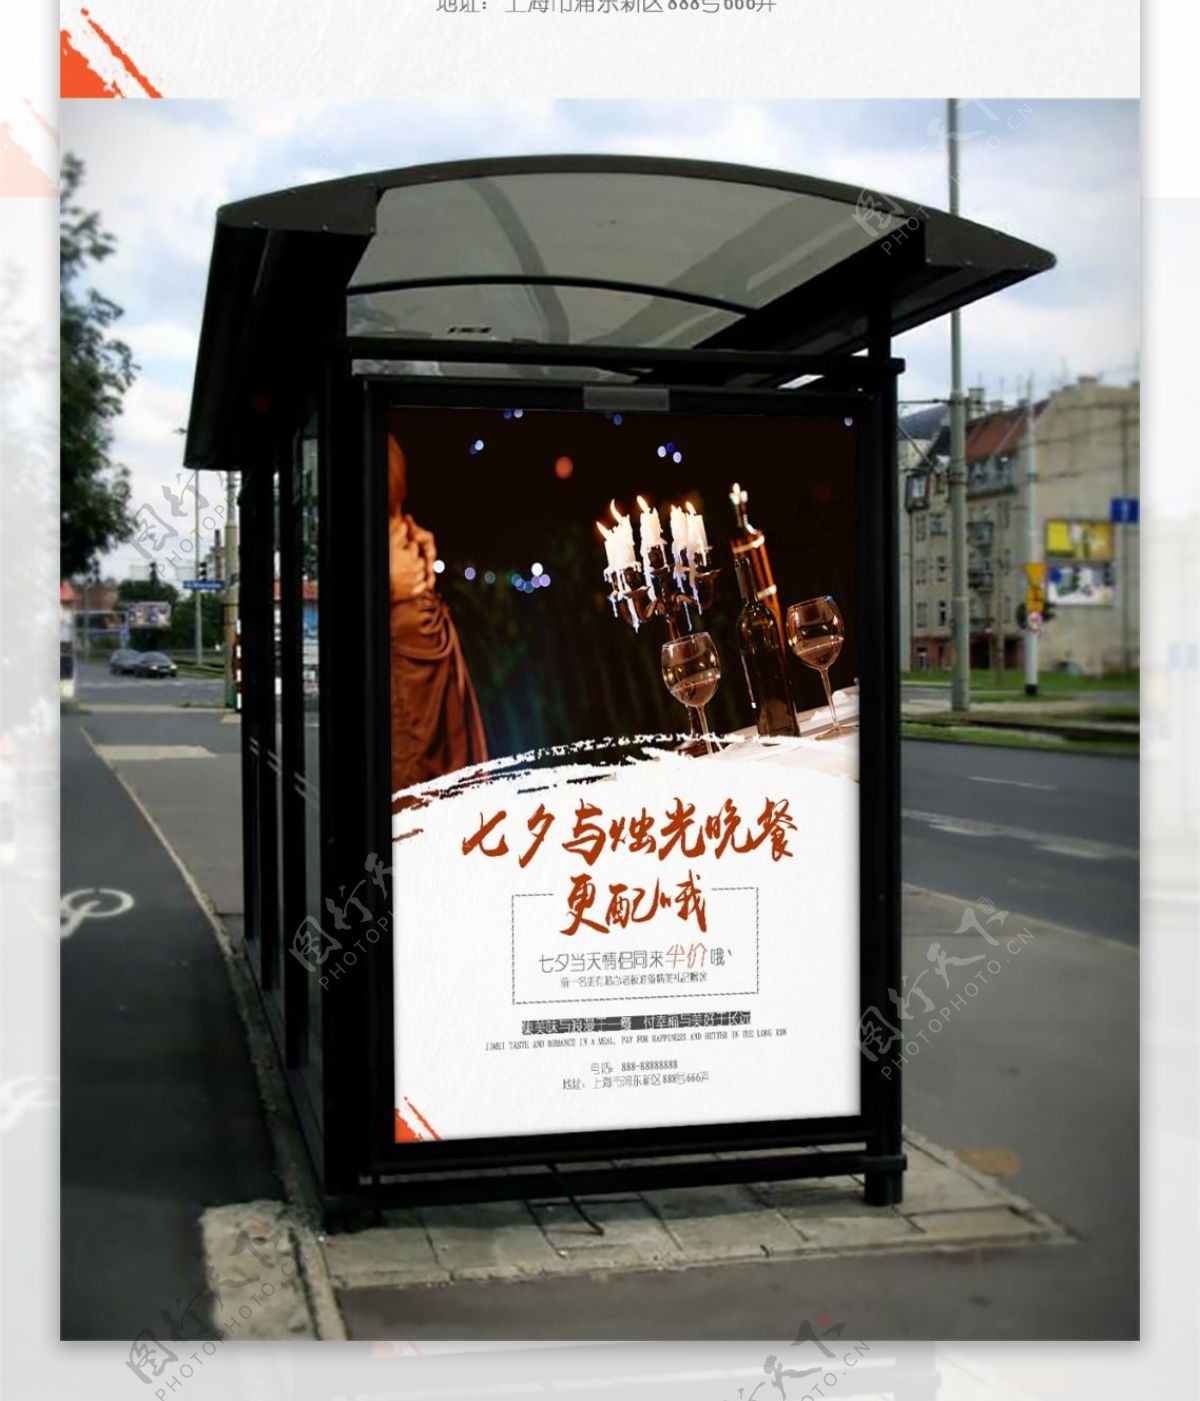 七夕餐厅活动宣传海报